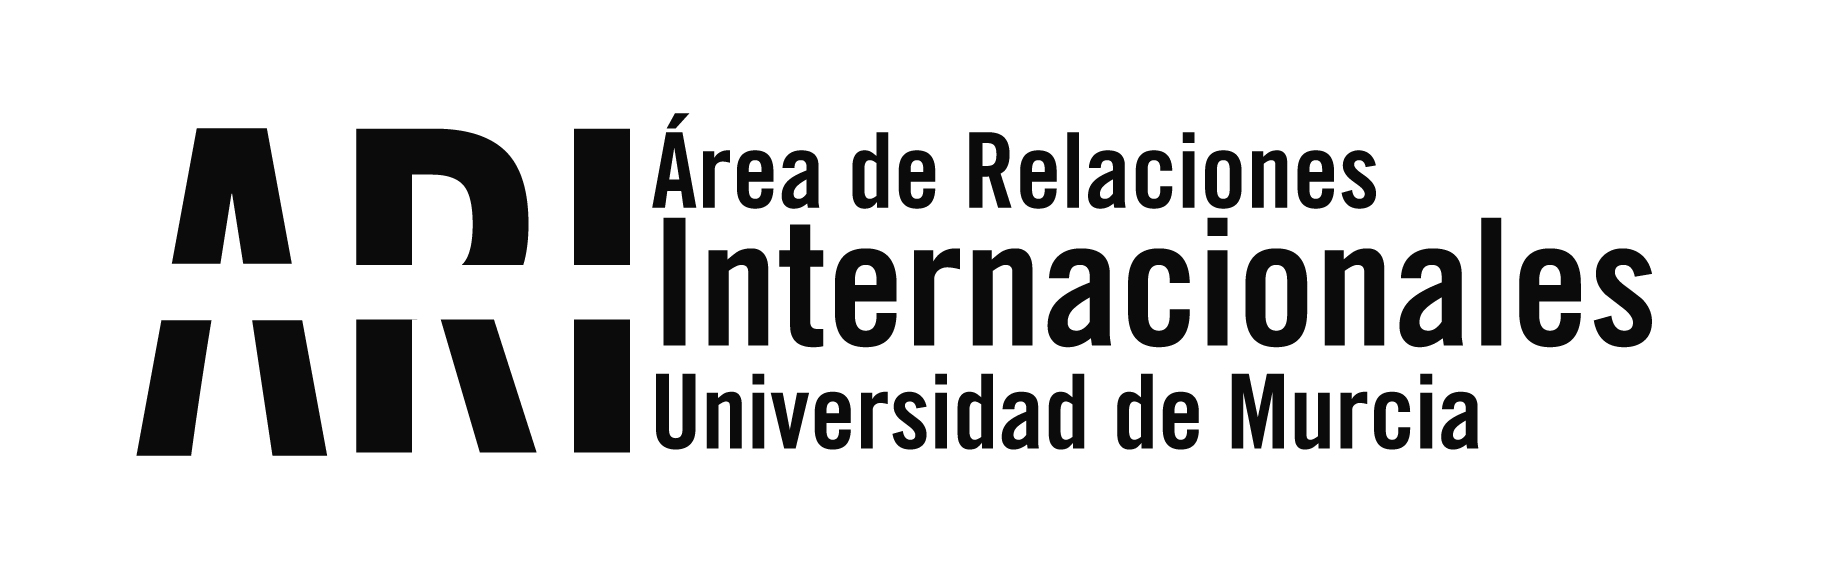 Bienvenida Internacional UM del 2do cuatrimestre del curso 2015-16 - Área de Relaciones Internacionales